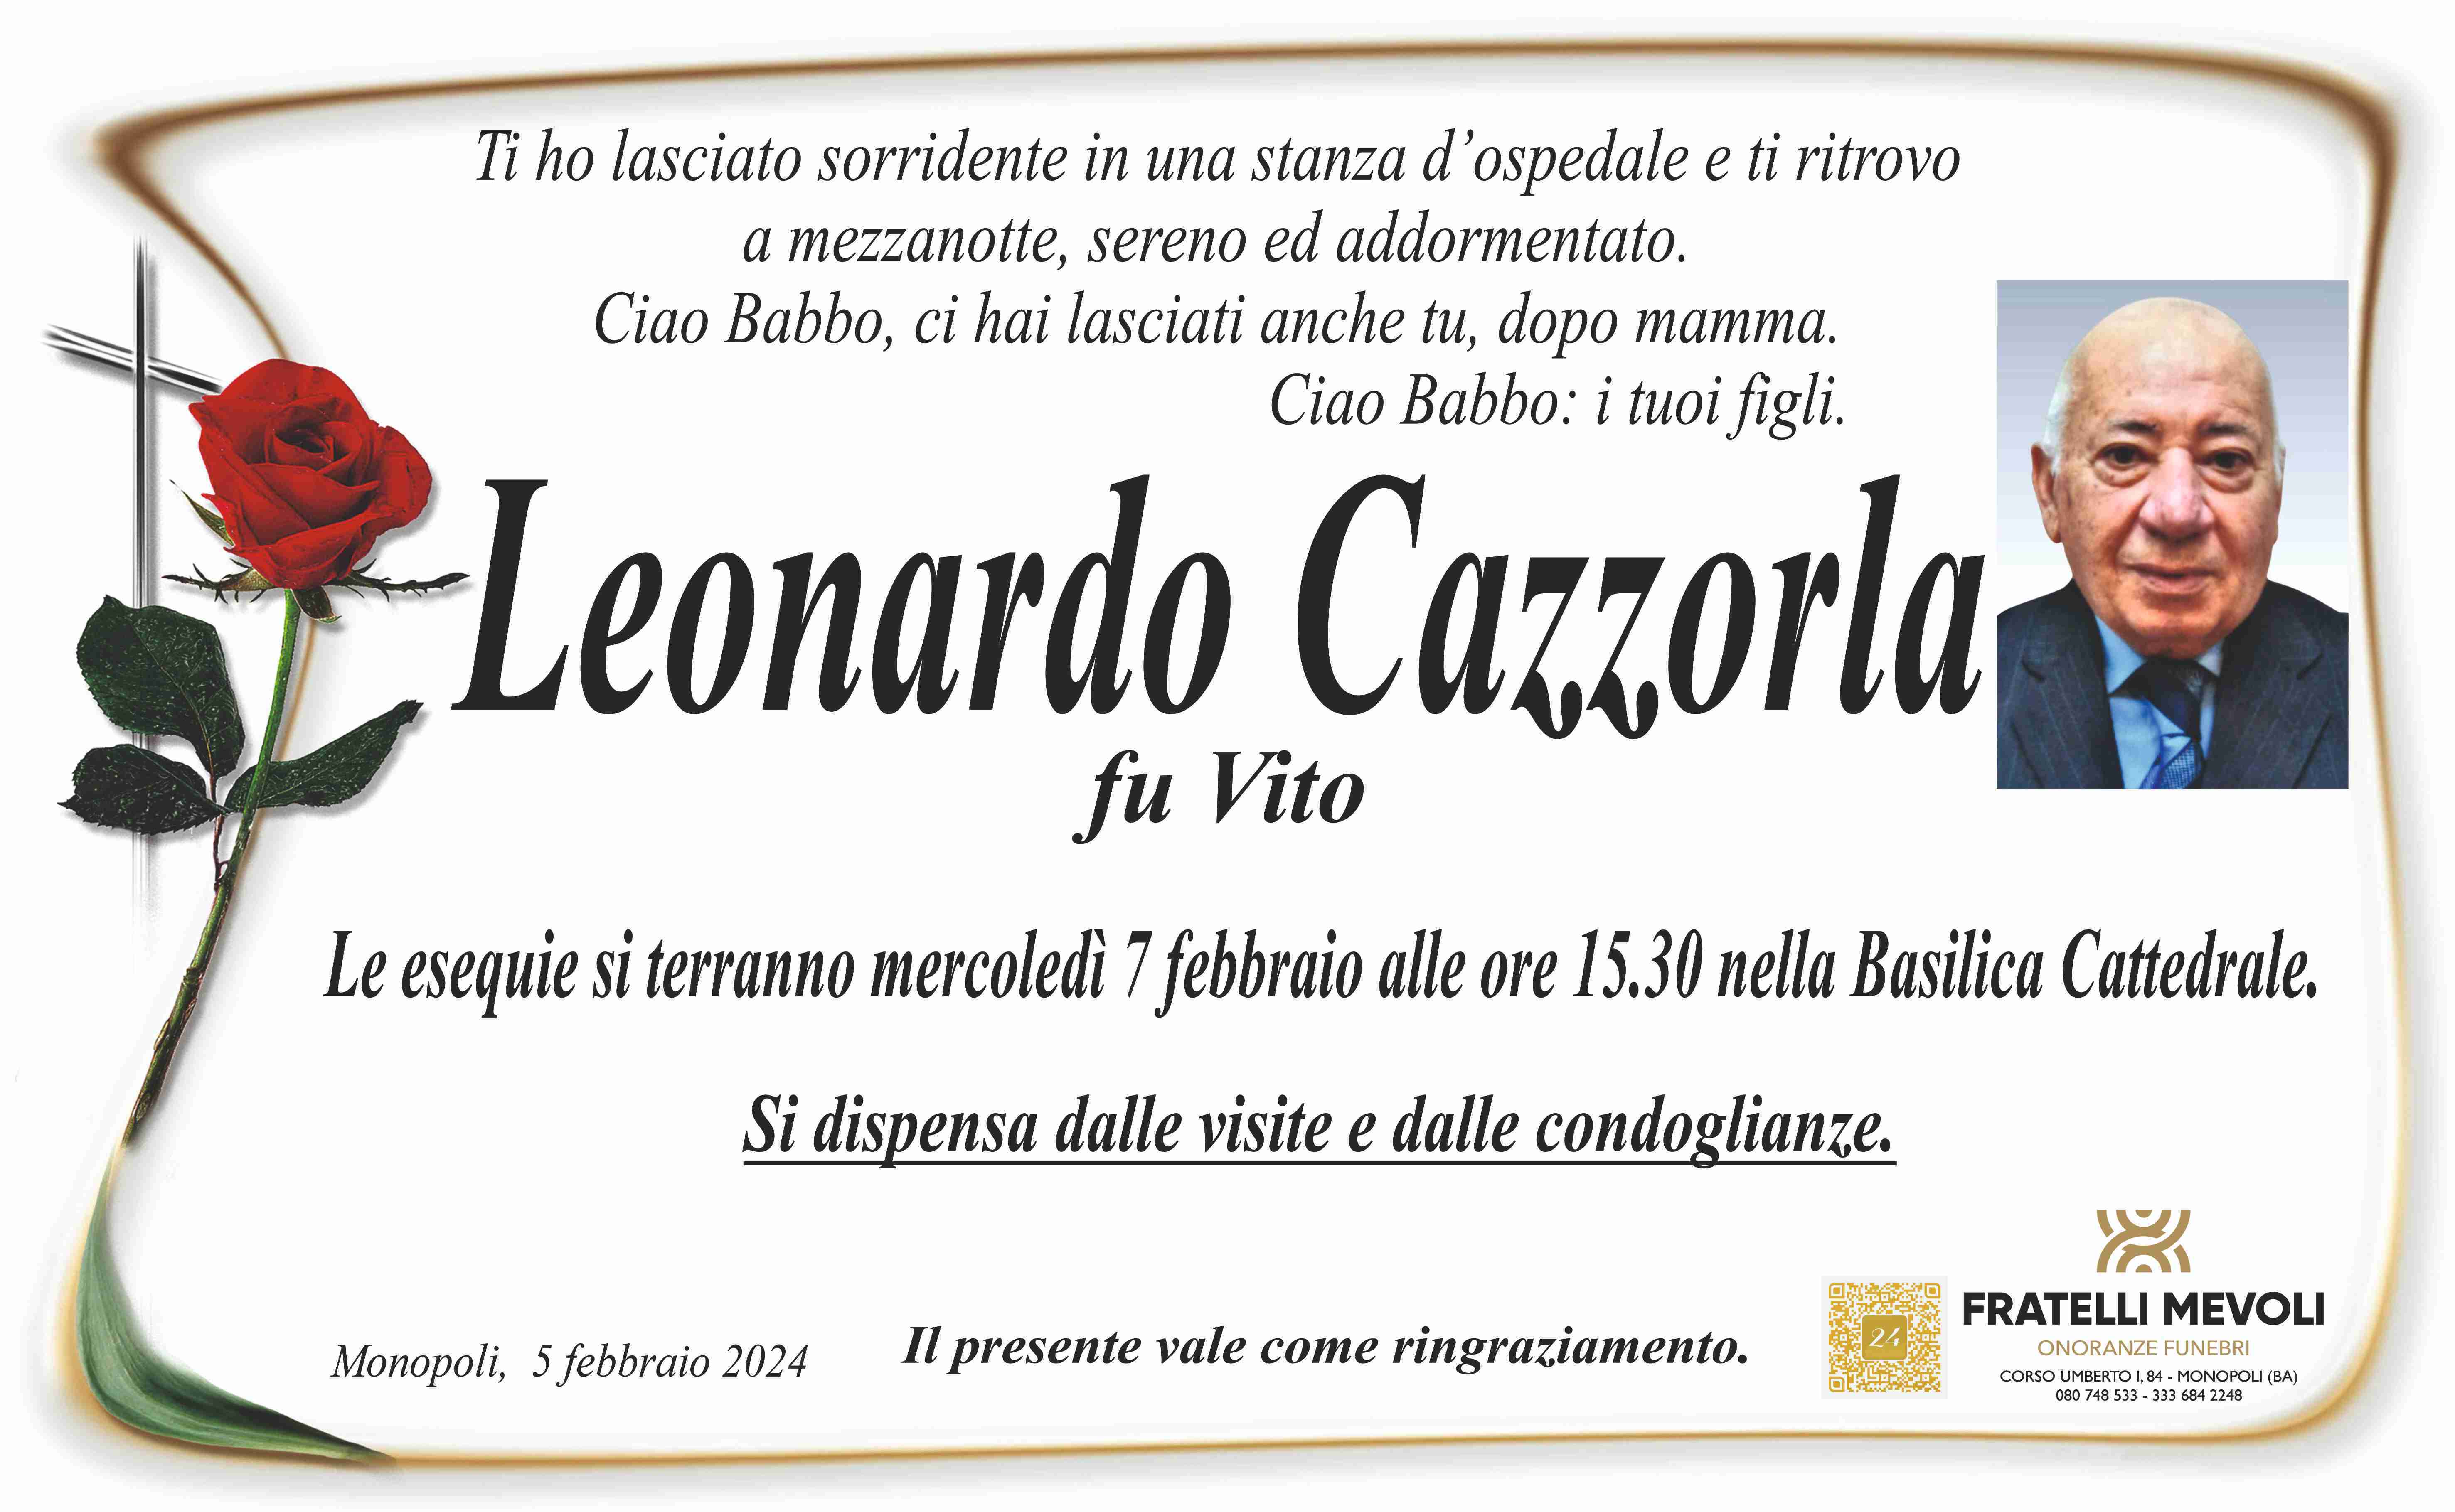 Leonardo Cazzorla